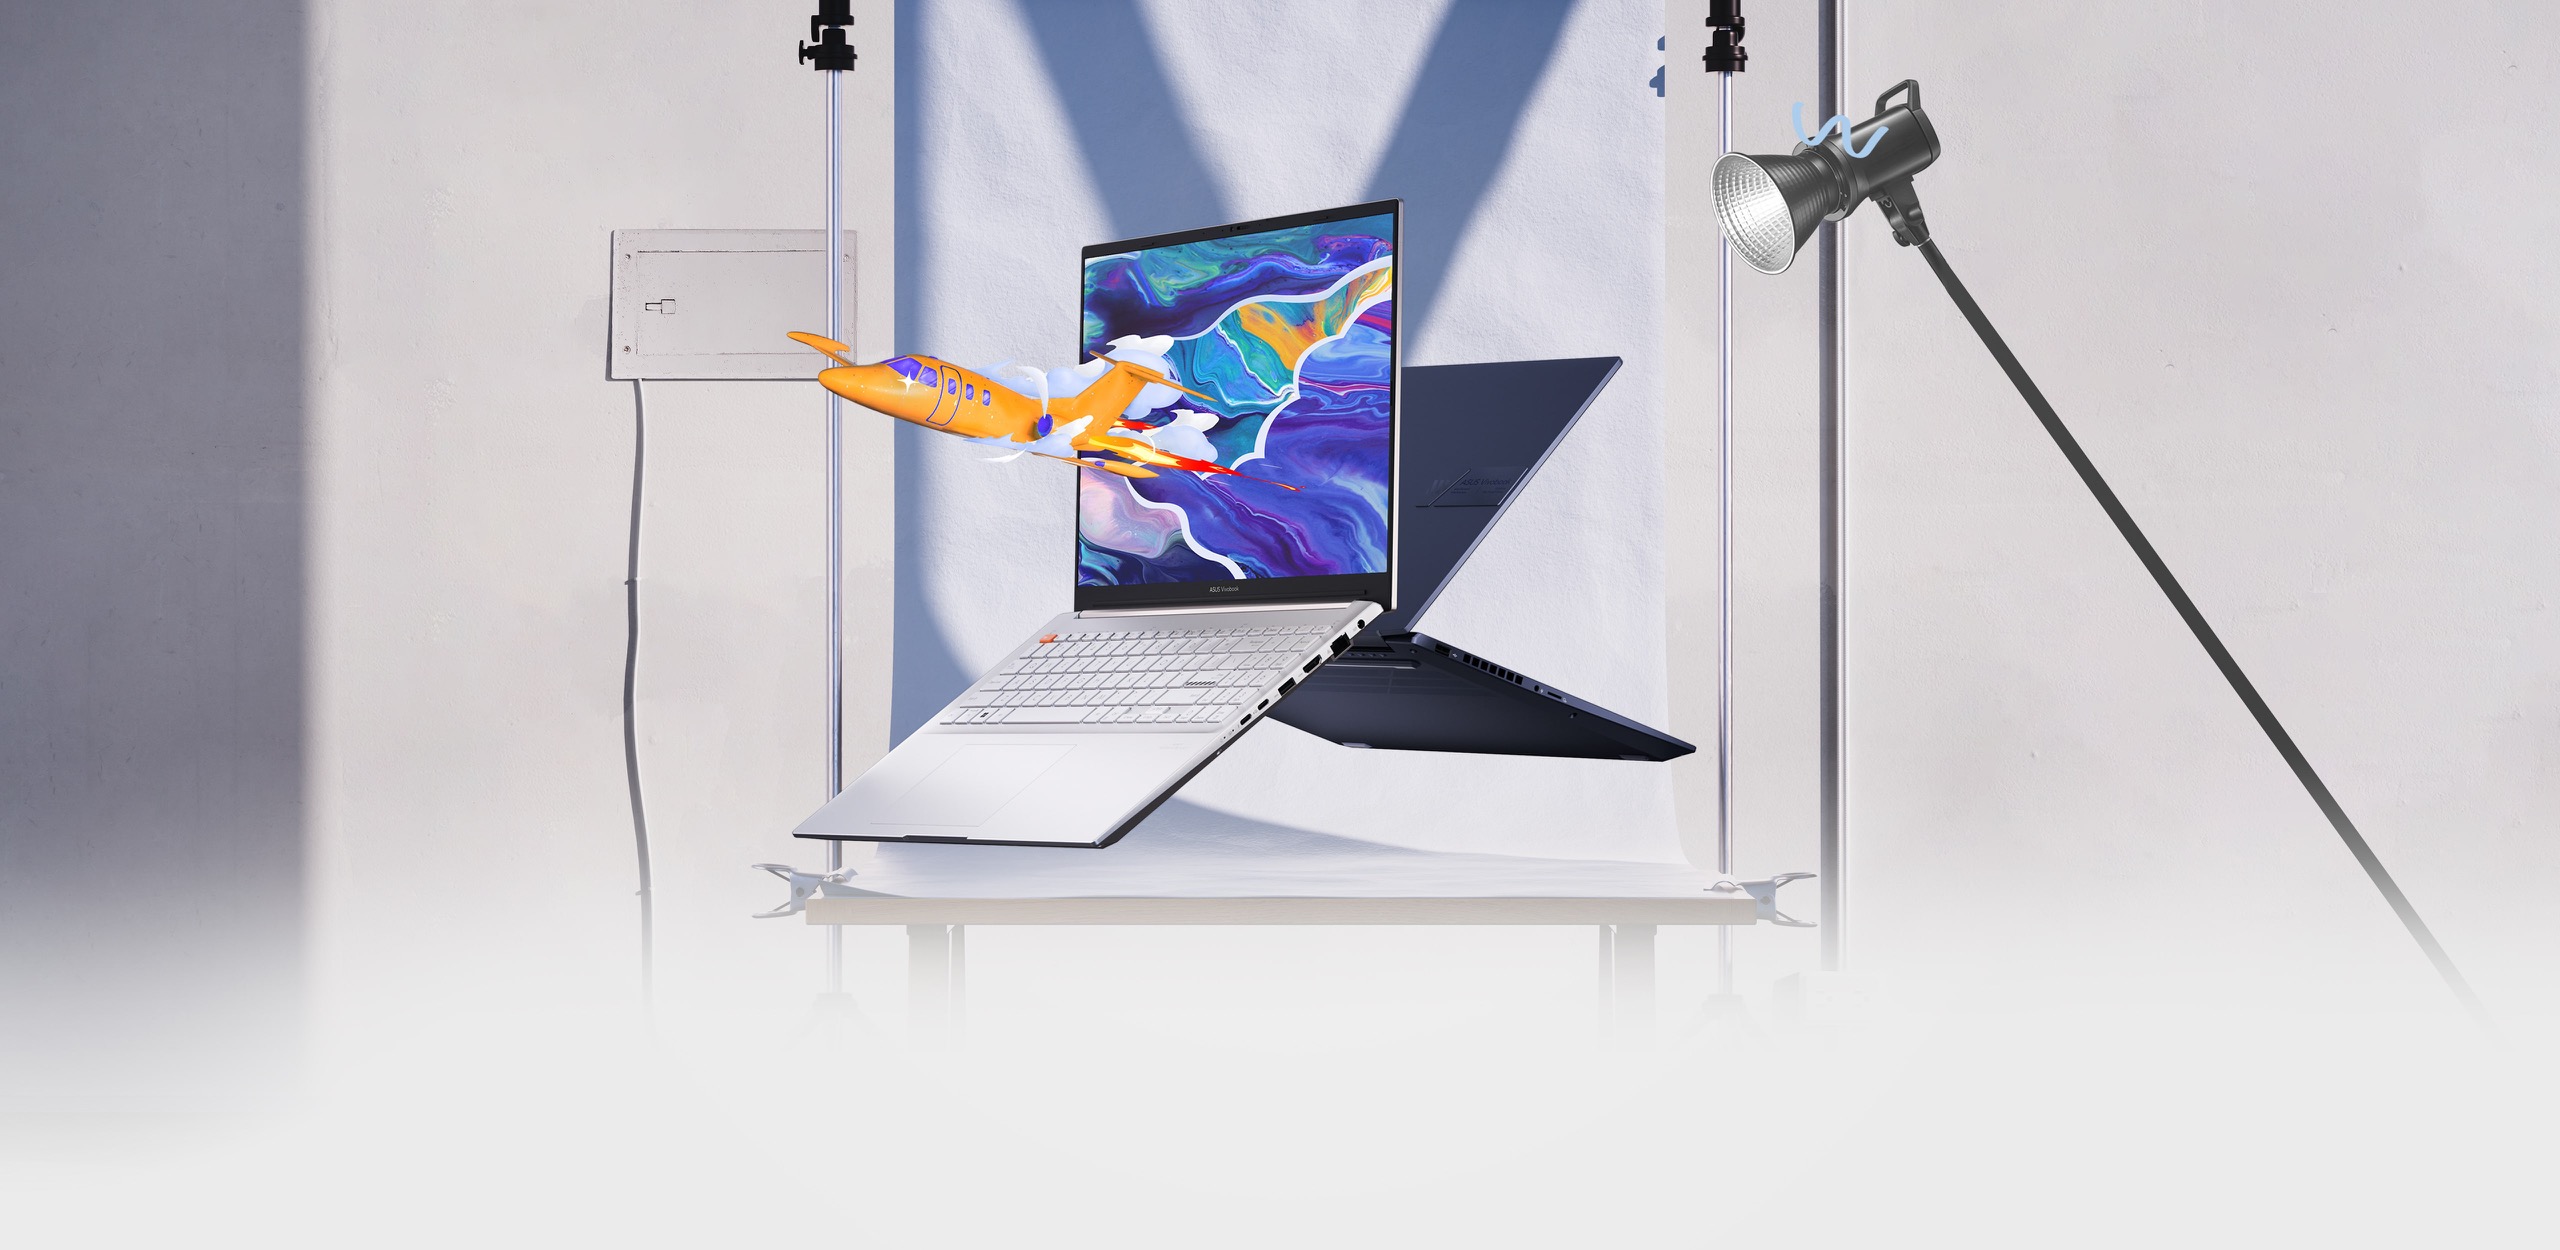 Două laptopuri Vivobook Pro 16 OLED Vivobook Pro 16 în vedere din față și din spate, cu unul dintre ele arătând un avion care sare dintr-un grafic colorat pe ecran.